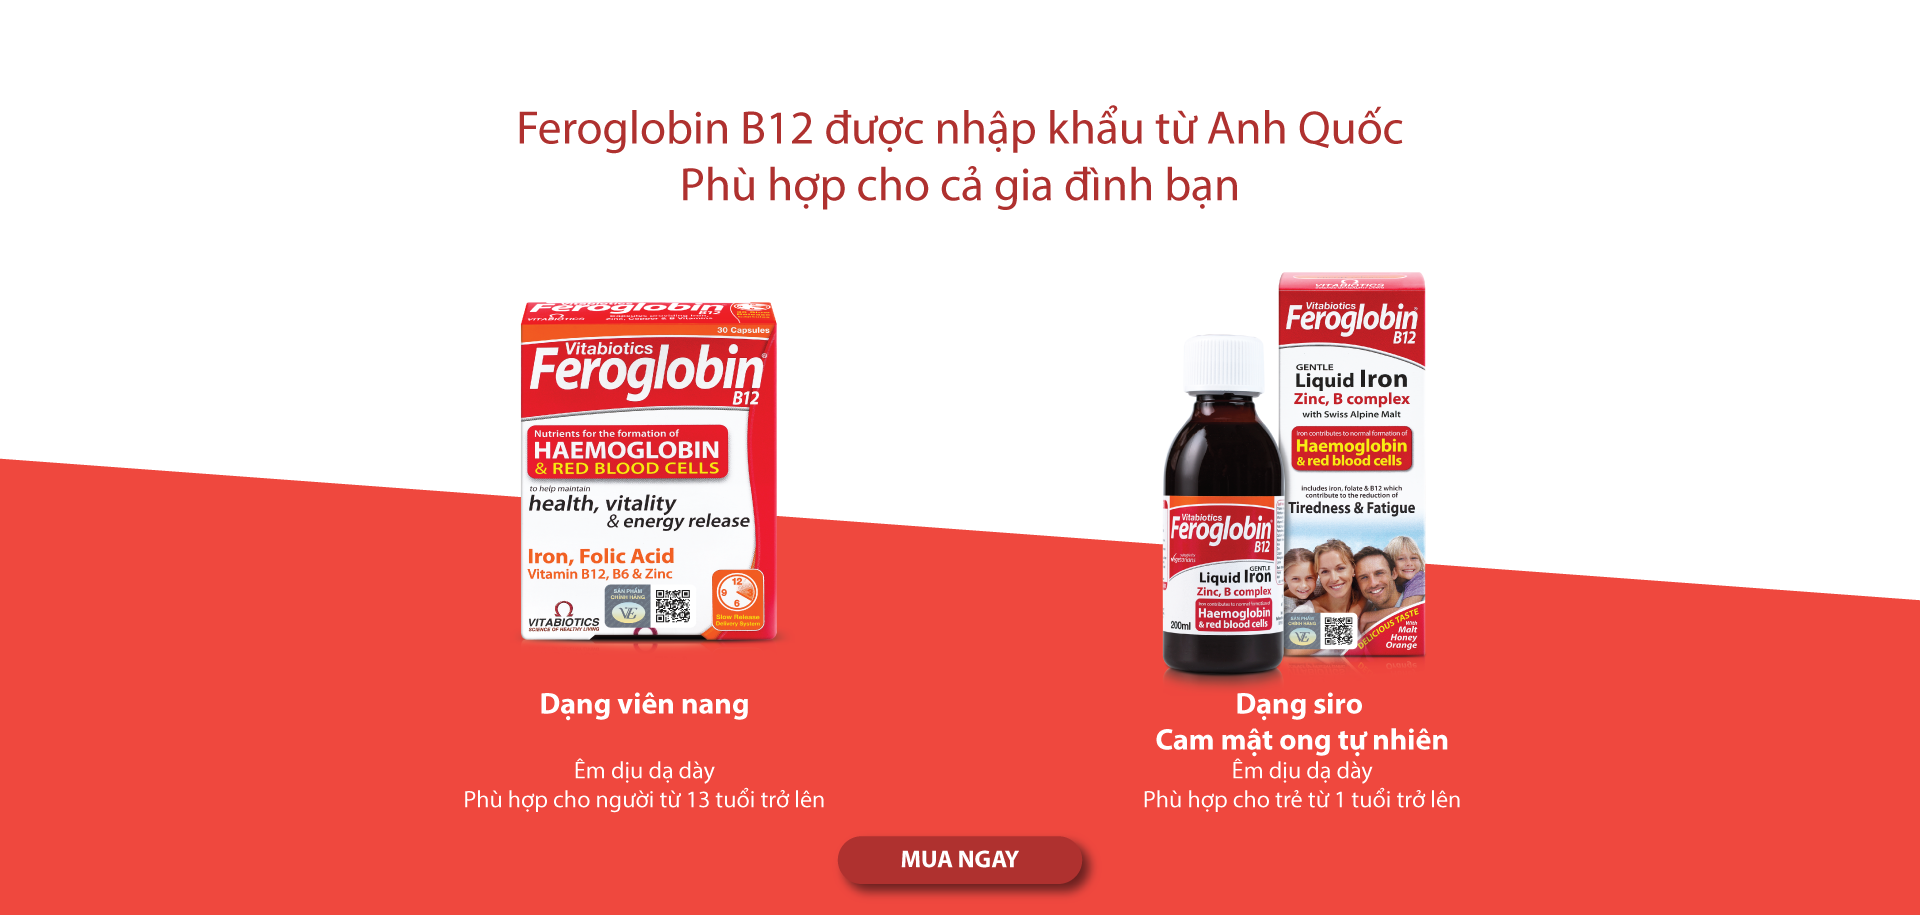 /upload/image/banner/1920x915/Banner-website-Feroglobin-1920x915-px.png